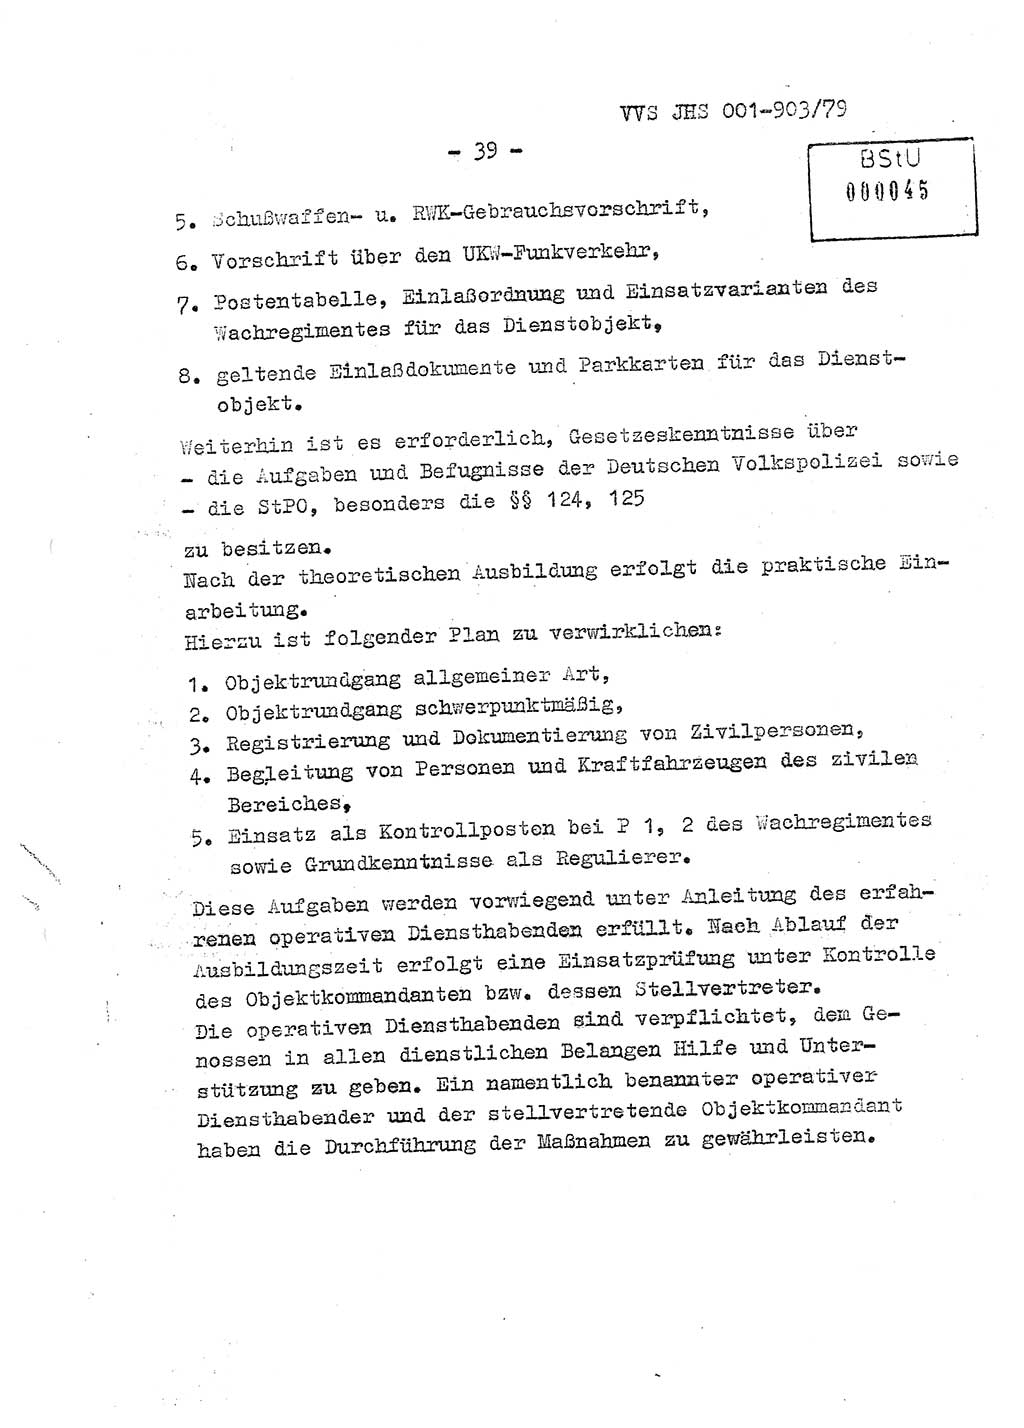 Fachschulabschlußarbeit Oberleutnant Jochen Pfeffer (HA Ⅸ/AGL), Ministerium für Staatssicherheit (MfS) [Deutsche Demokratische Republik (DDR)], Juristische Hochschule (JHS), Vertrauliche Verschlußsache (VVS) 001-903/79, Potsdam 1979, Seite 39 (FS-Abschl.-Arb. MfS DDR JHS VVS 001-903/79 1979, S. 39)